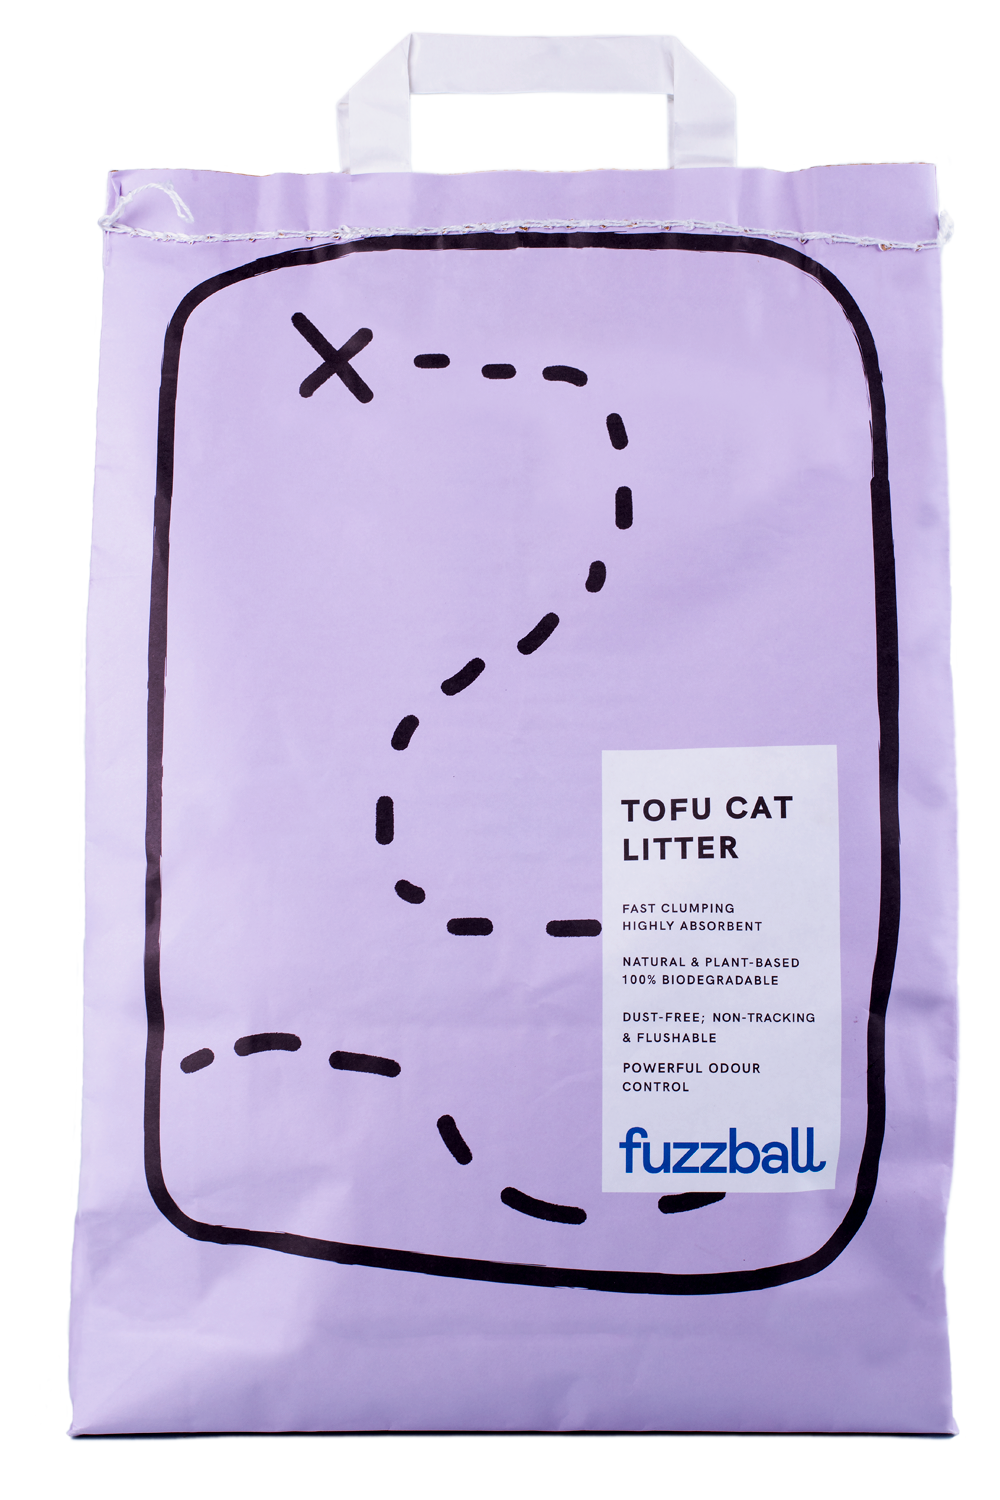 Final Fuzzball cat litter